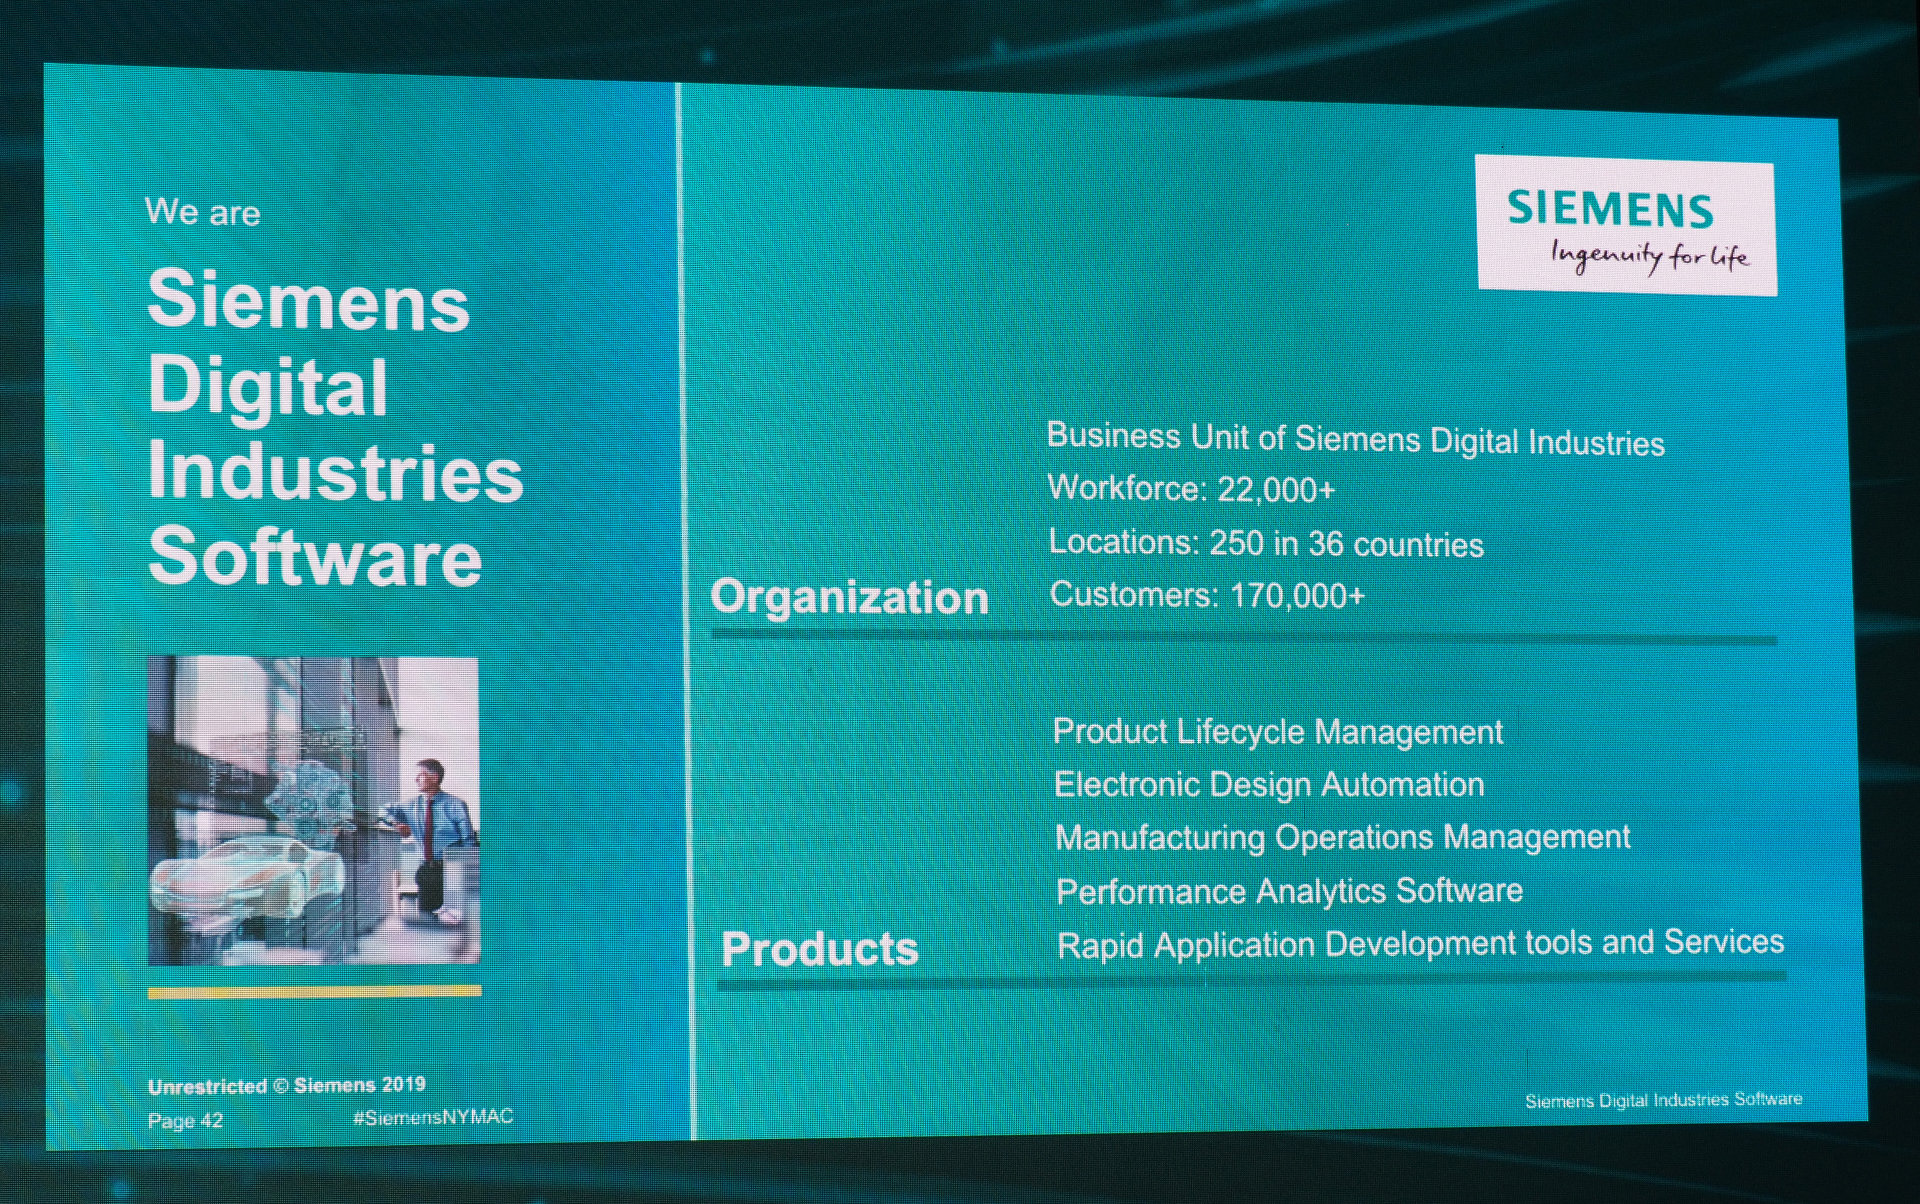 Siemens Digital Industries Softwareɂ oTFSiemens Digital Industries SoftwareiNbNŊgj